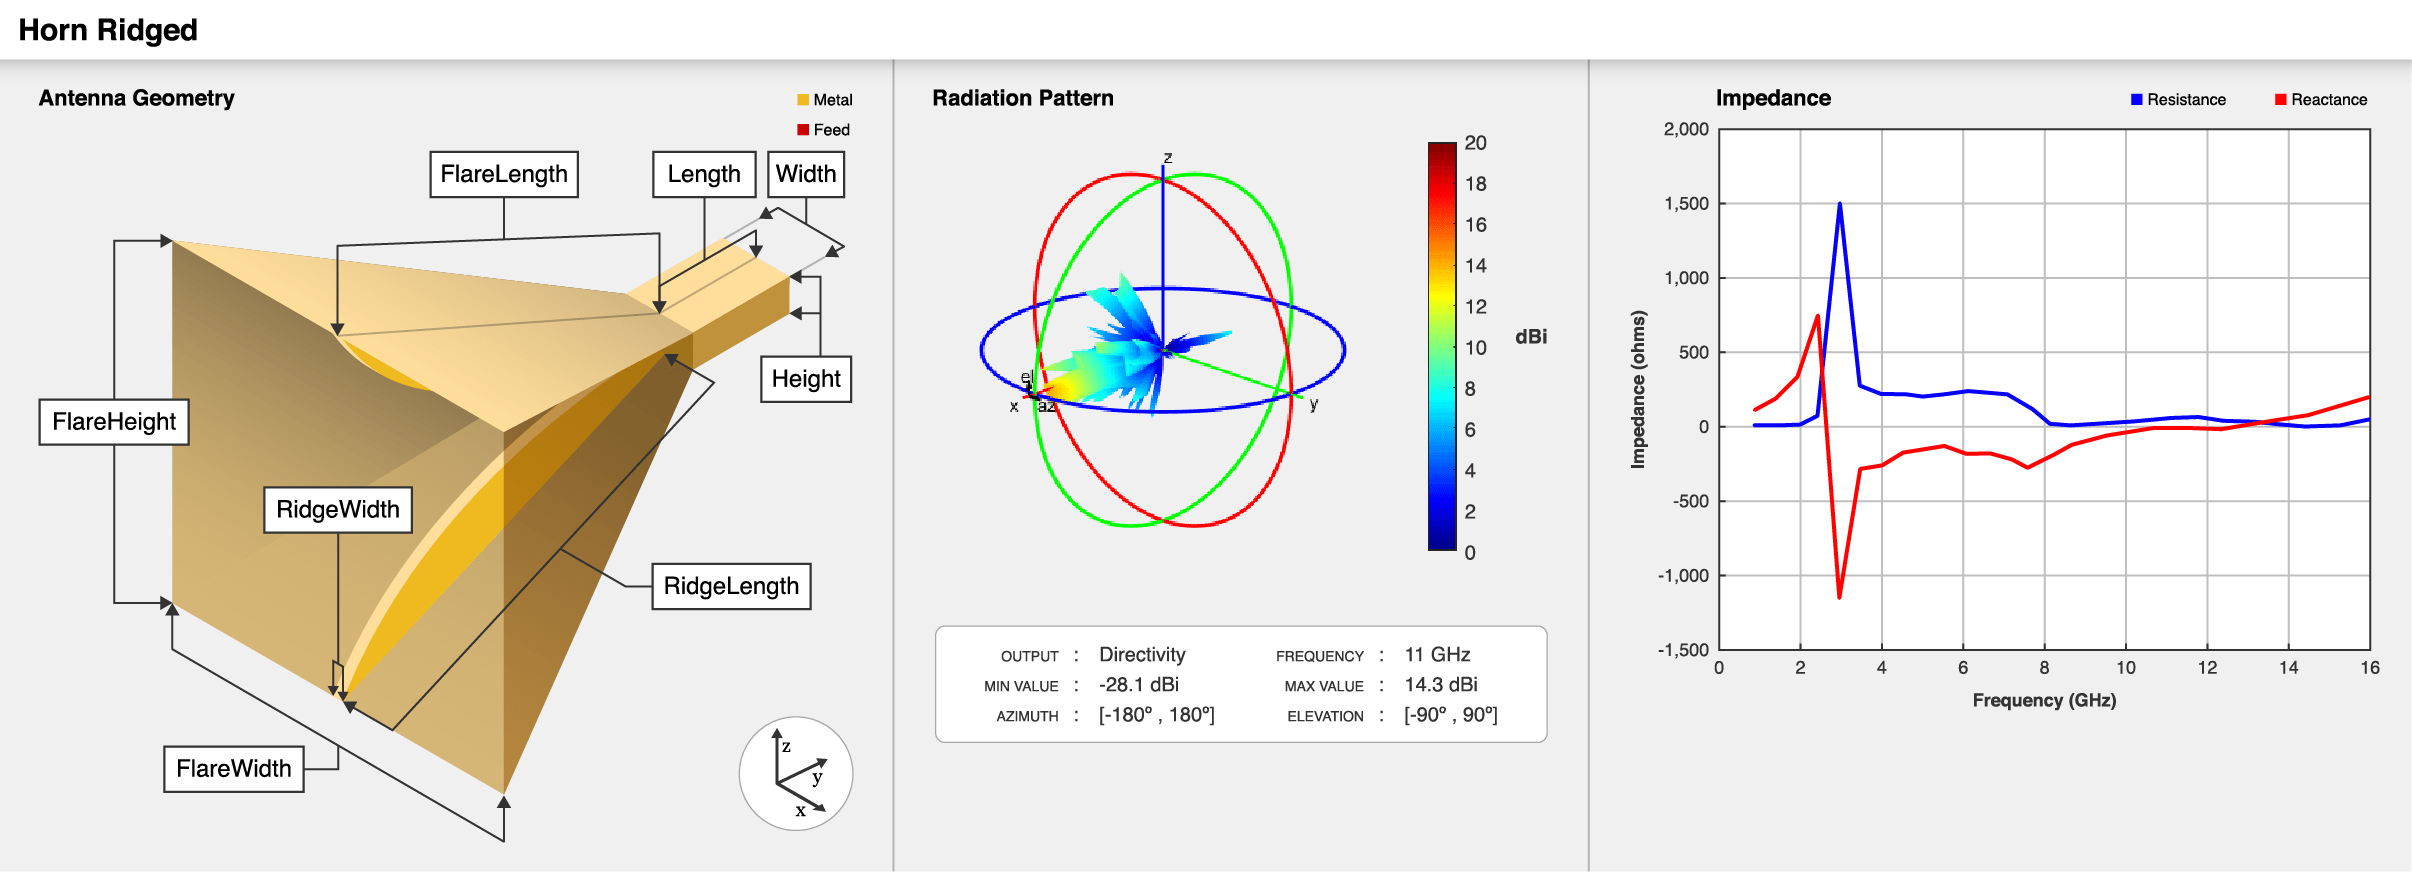 矩形双脊喇叭天线几何,默认的辐射模式和阻抗图。